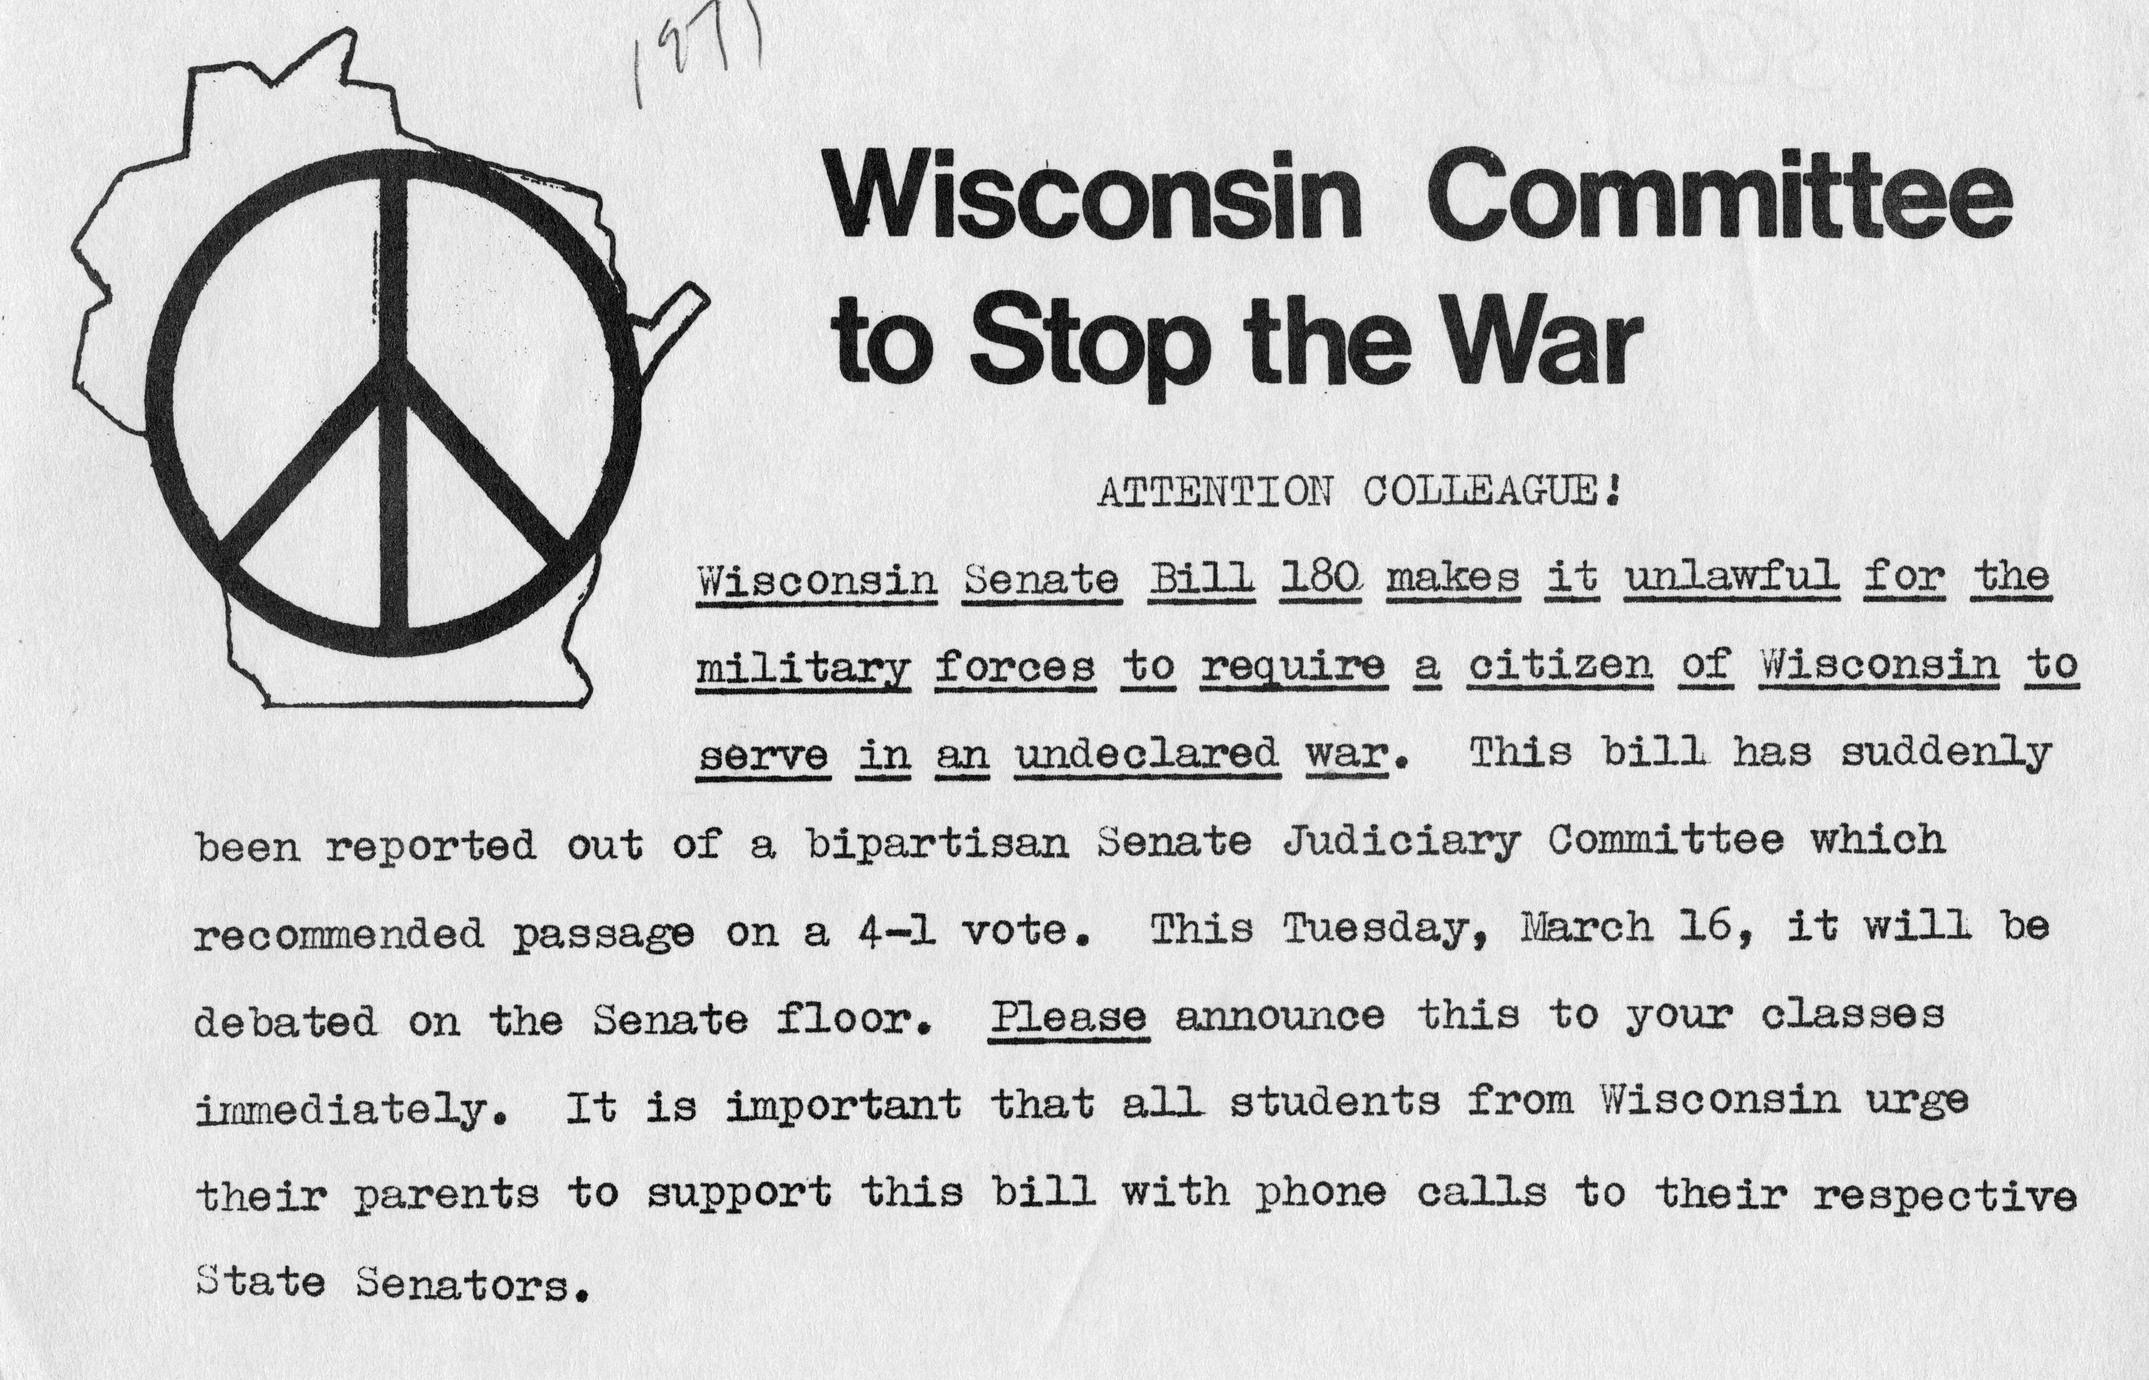 Wisconsin Committee to Stop the War flier